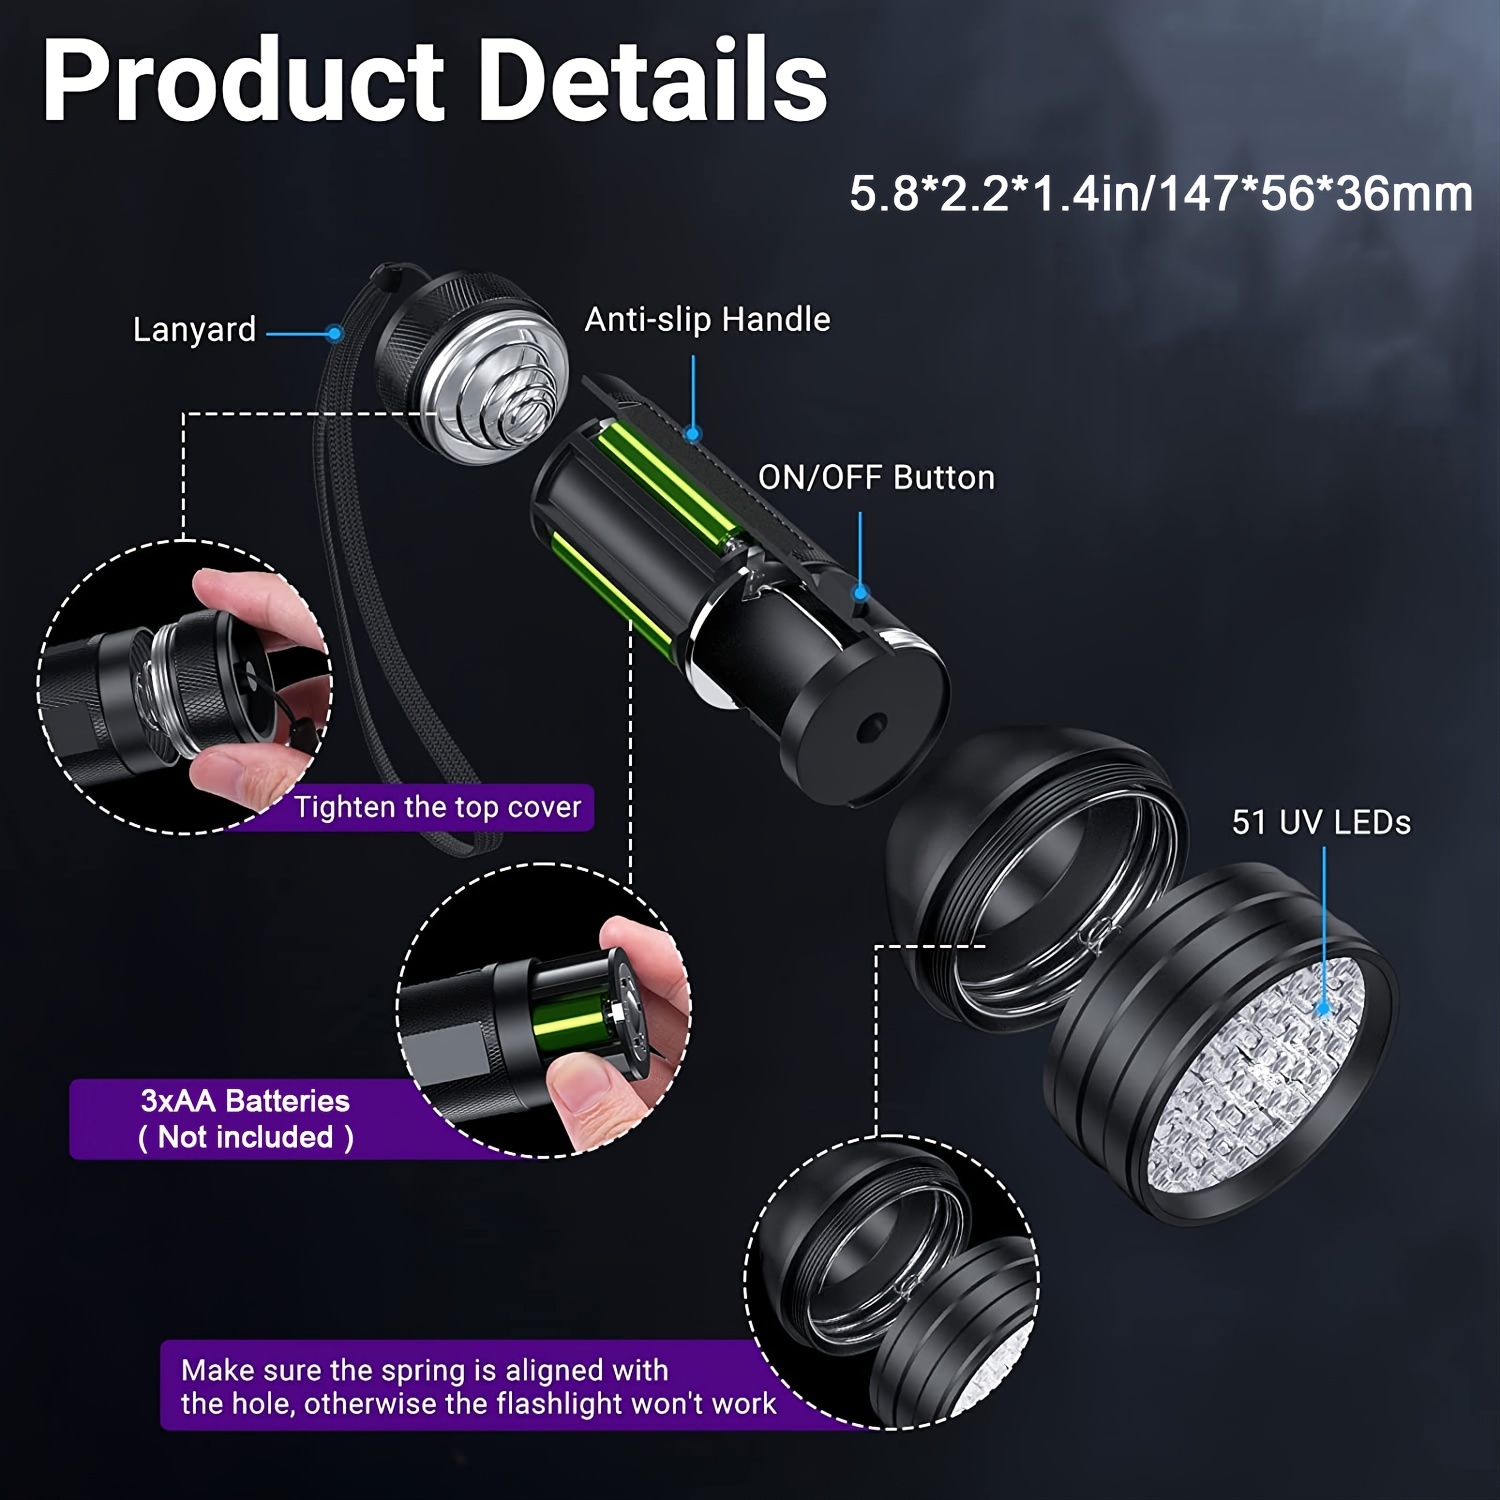 Linterna de luz UV de luz negra: Vansky 395nm 12 LED 2 unidades de linterna  ultravioleta de luz negra mini potente detector de orina de mascotas para